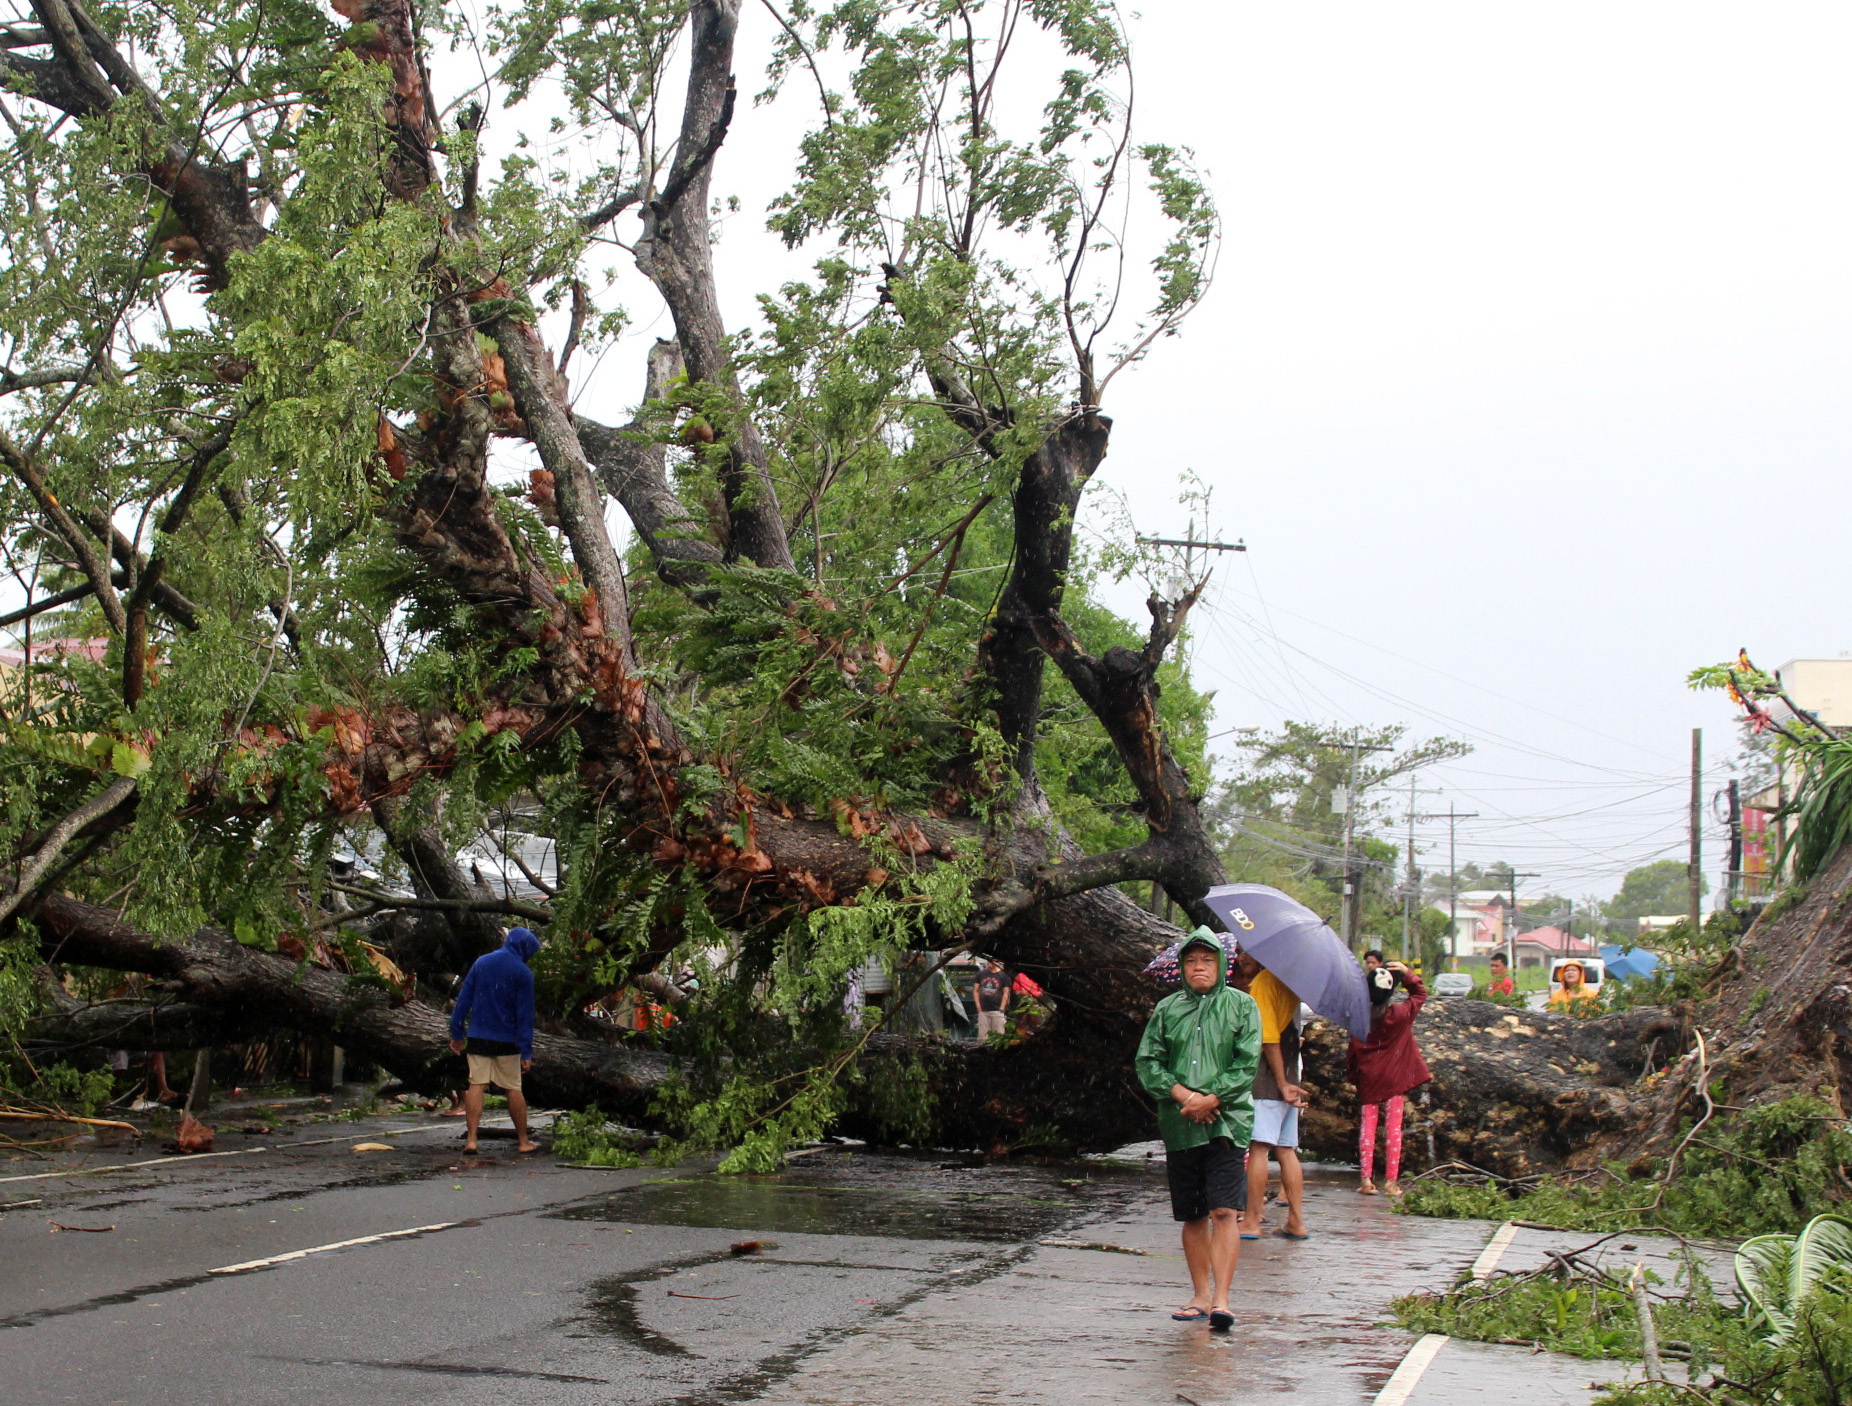 Късно в понеделник вечер тайфунът Камури удари Филипините със силни дъждове, които наводниха столицата в Манила. Според вестник "Филипинска звезда" броят на евакуираните в страната надхвърли 225 хиляди души.